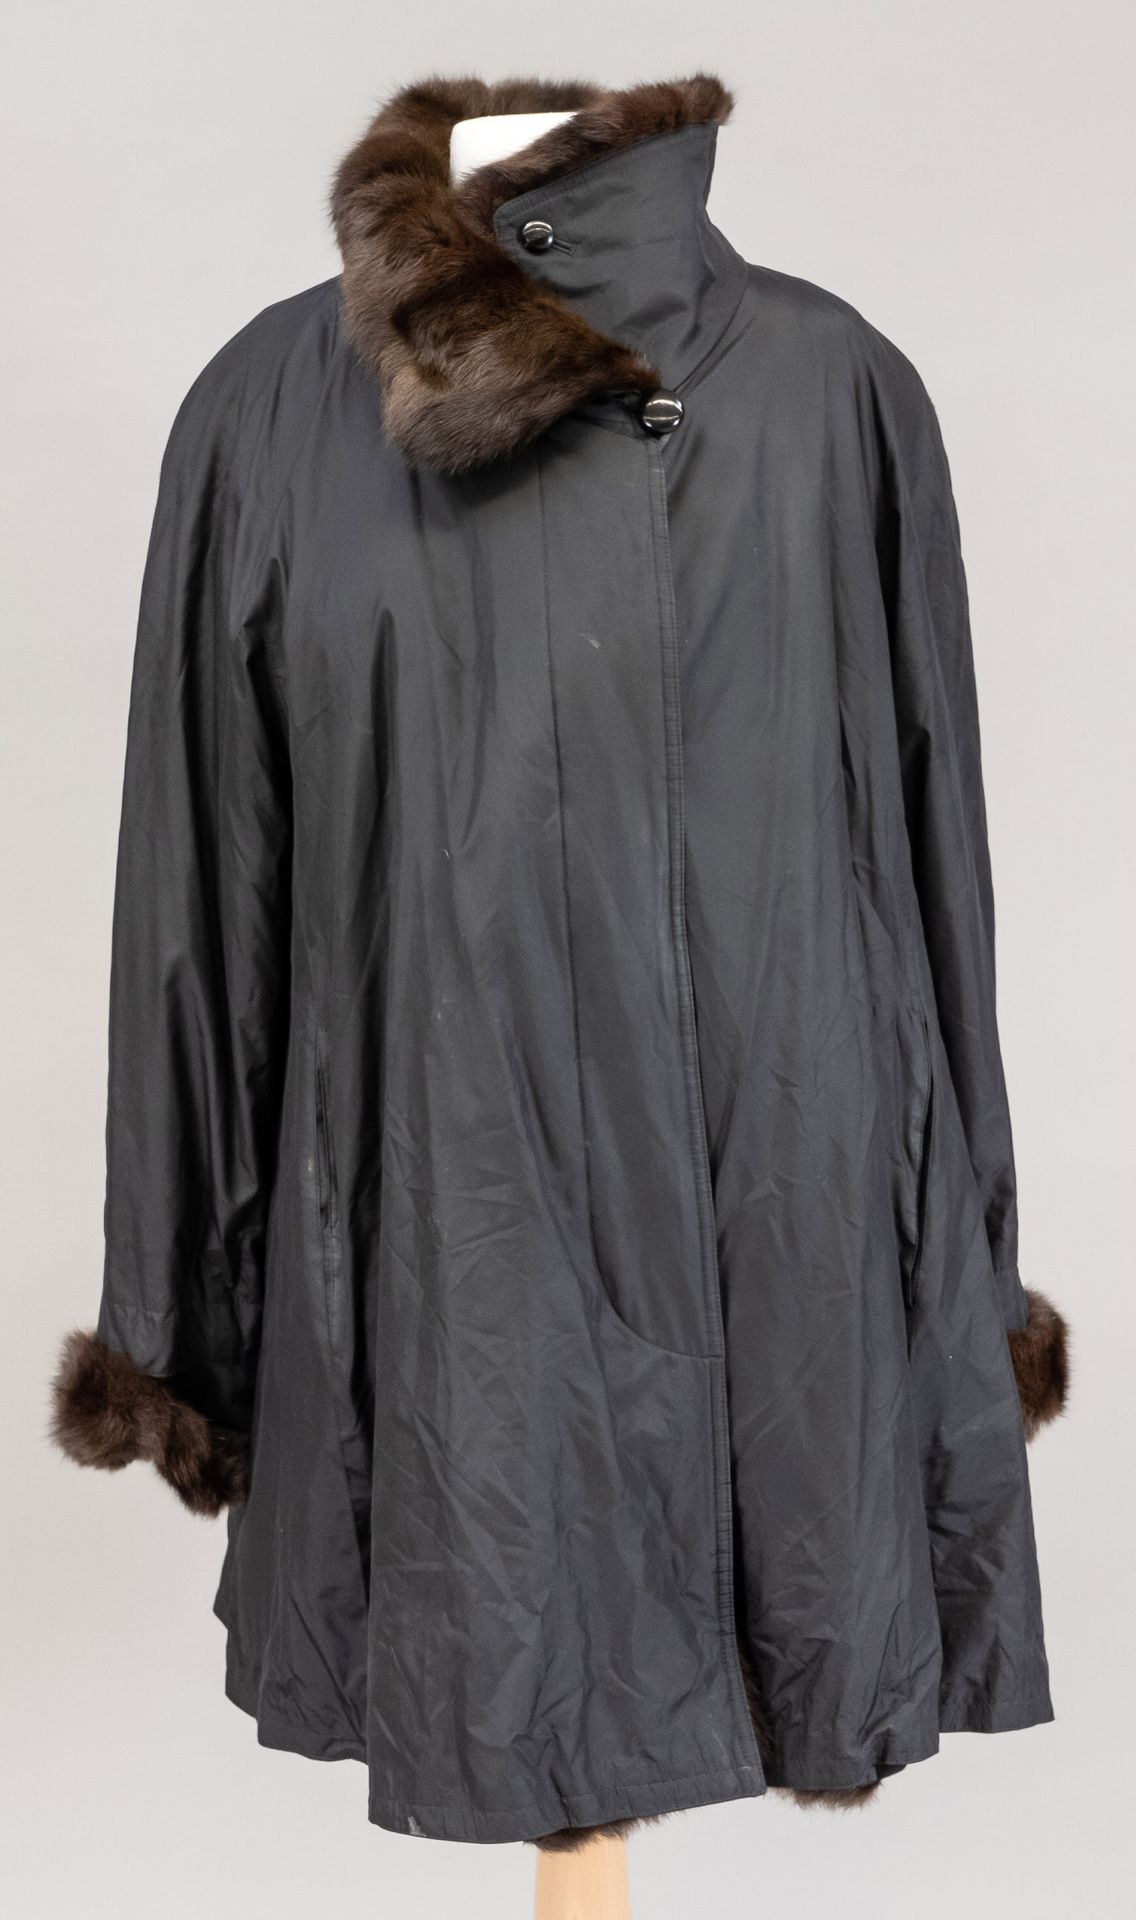 Null 带有毛皮装饰的女式大衣，在衬里中标有Jobis作为刺绣。尺寸36，有轻微的磨损痕迹。